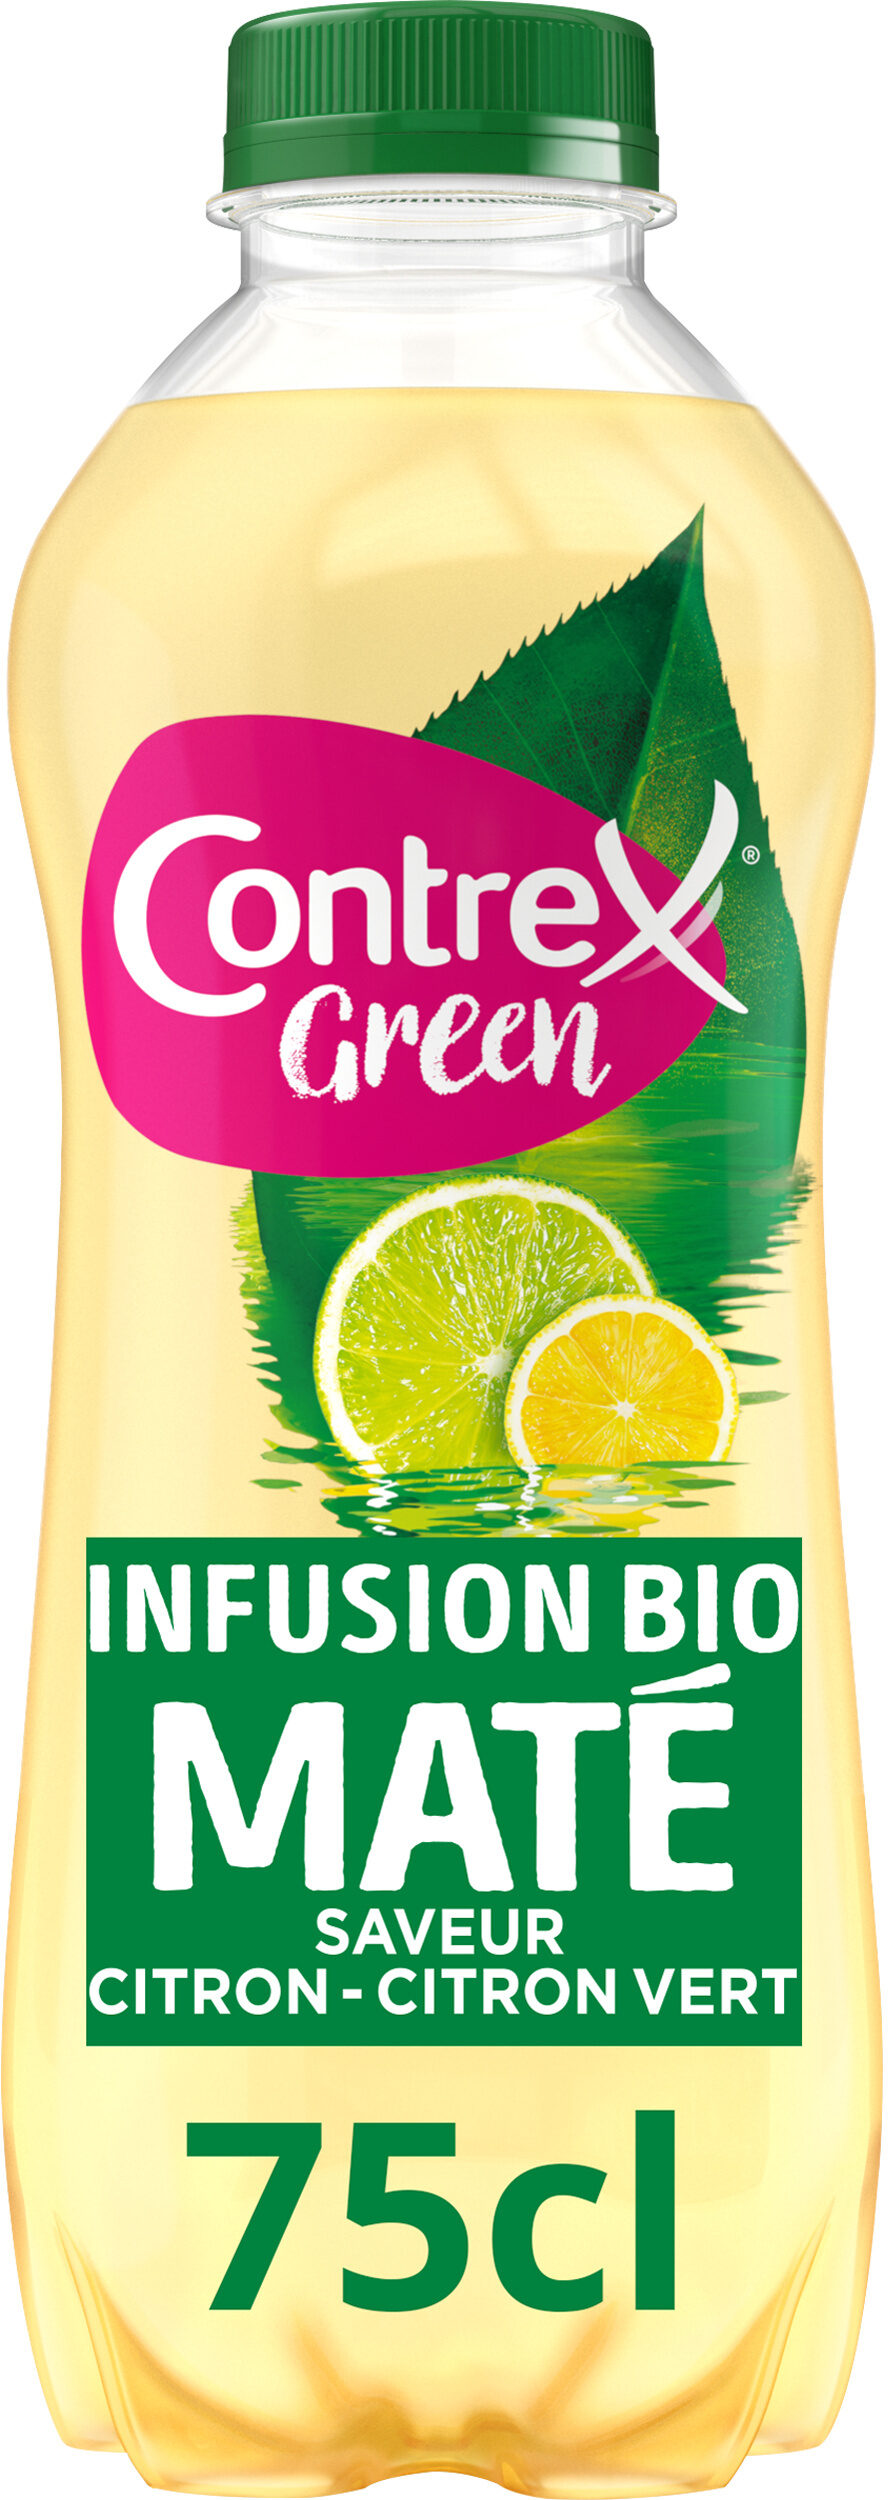 CONTREX Green Infusion de Maté BIO saveur Citron Citron Vert 75cl - Product - fr